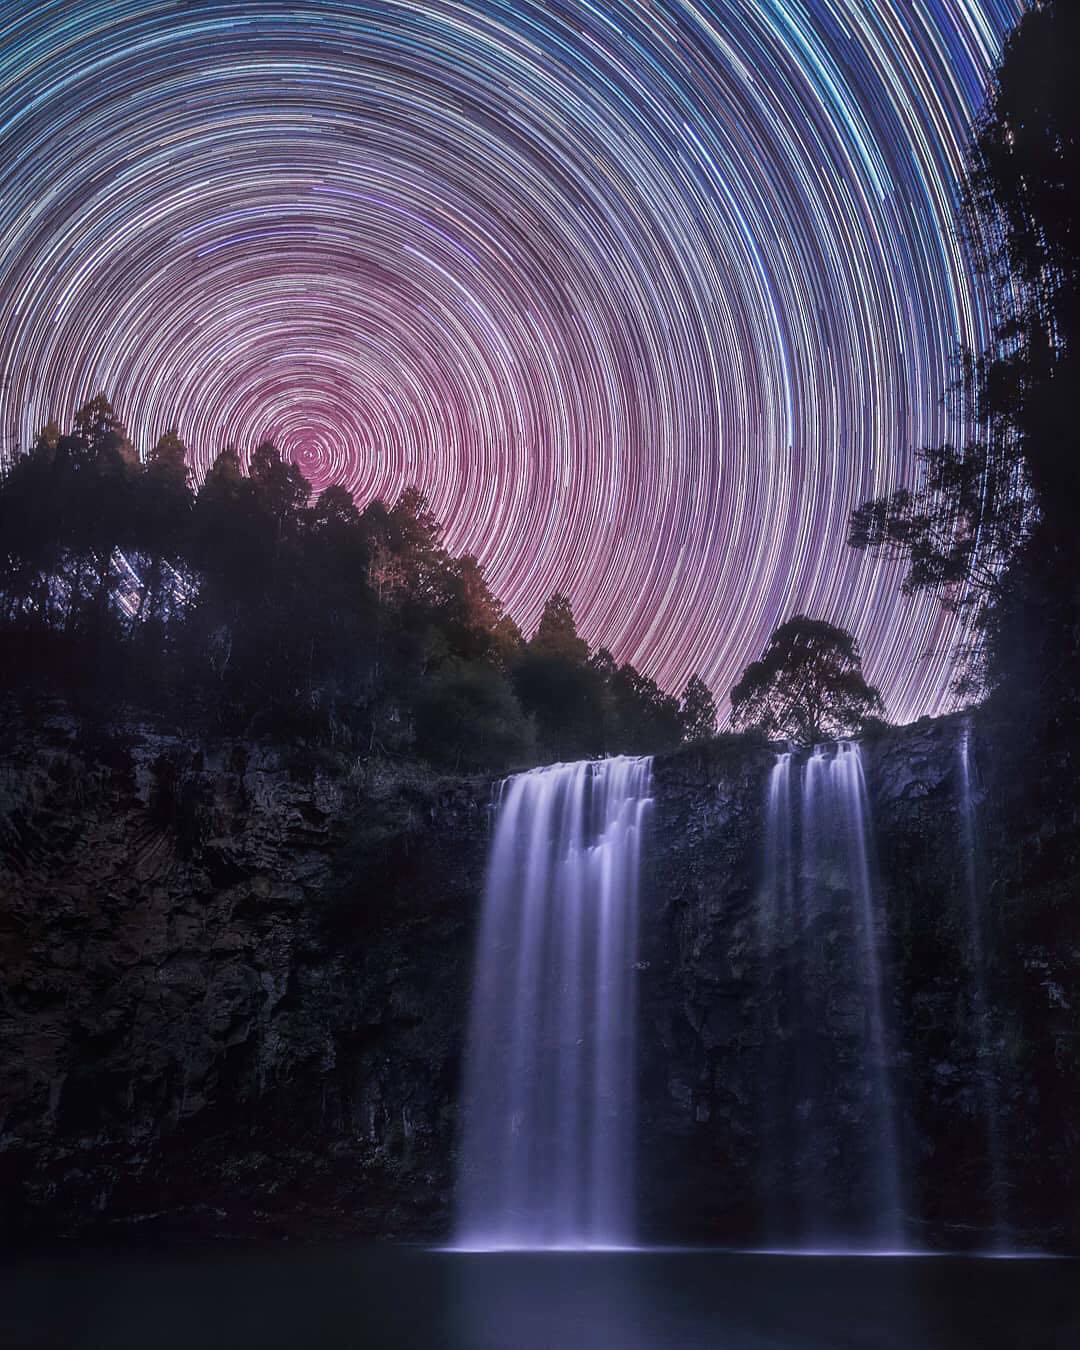  瀑布与星轨，来自摄影师Heesoo Chung。 